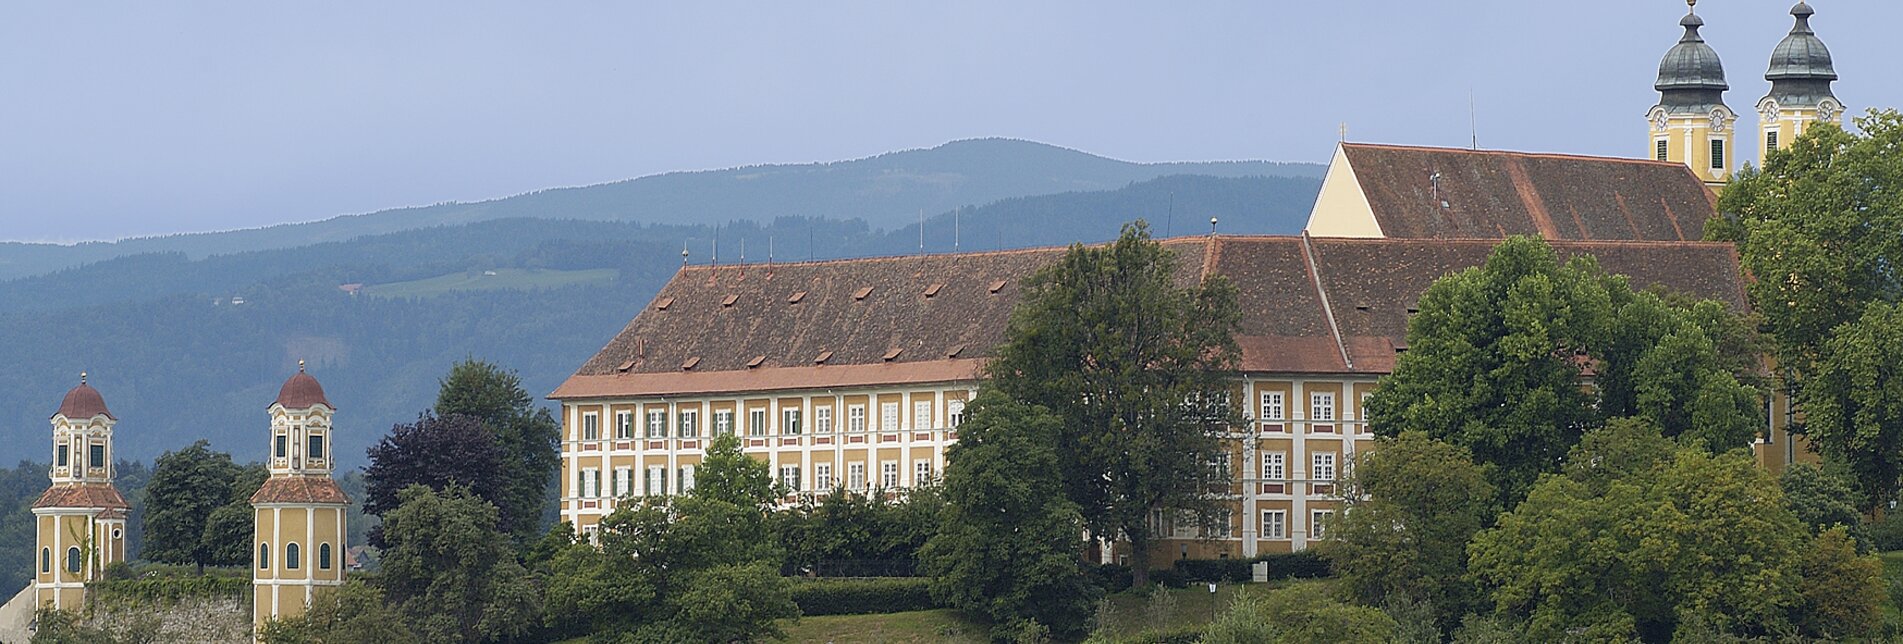 Schloss Stainz  | © Universalmuseum Joanneum 